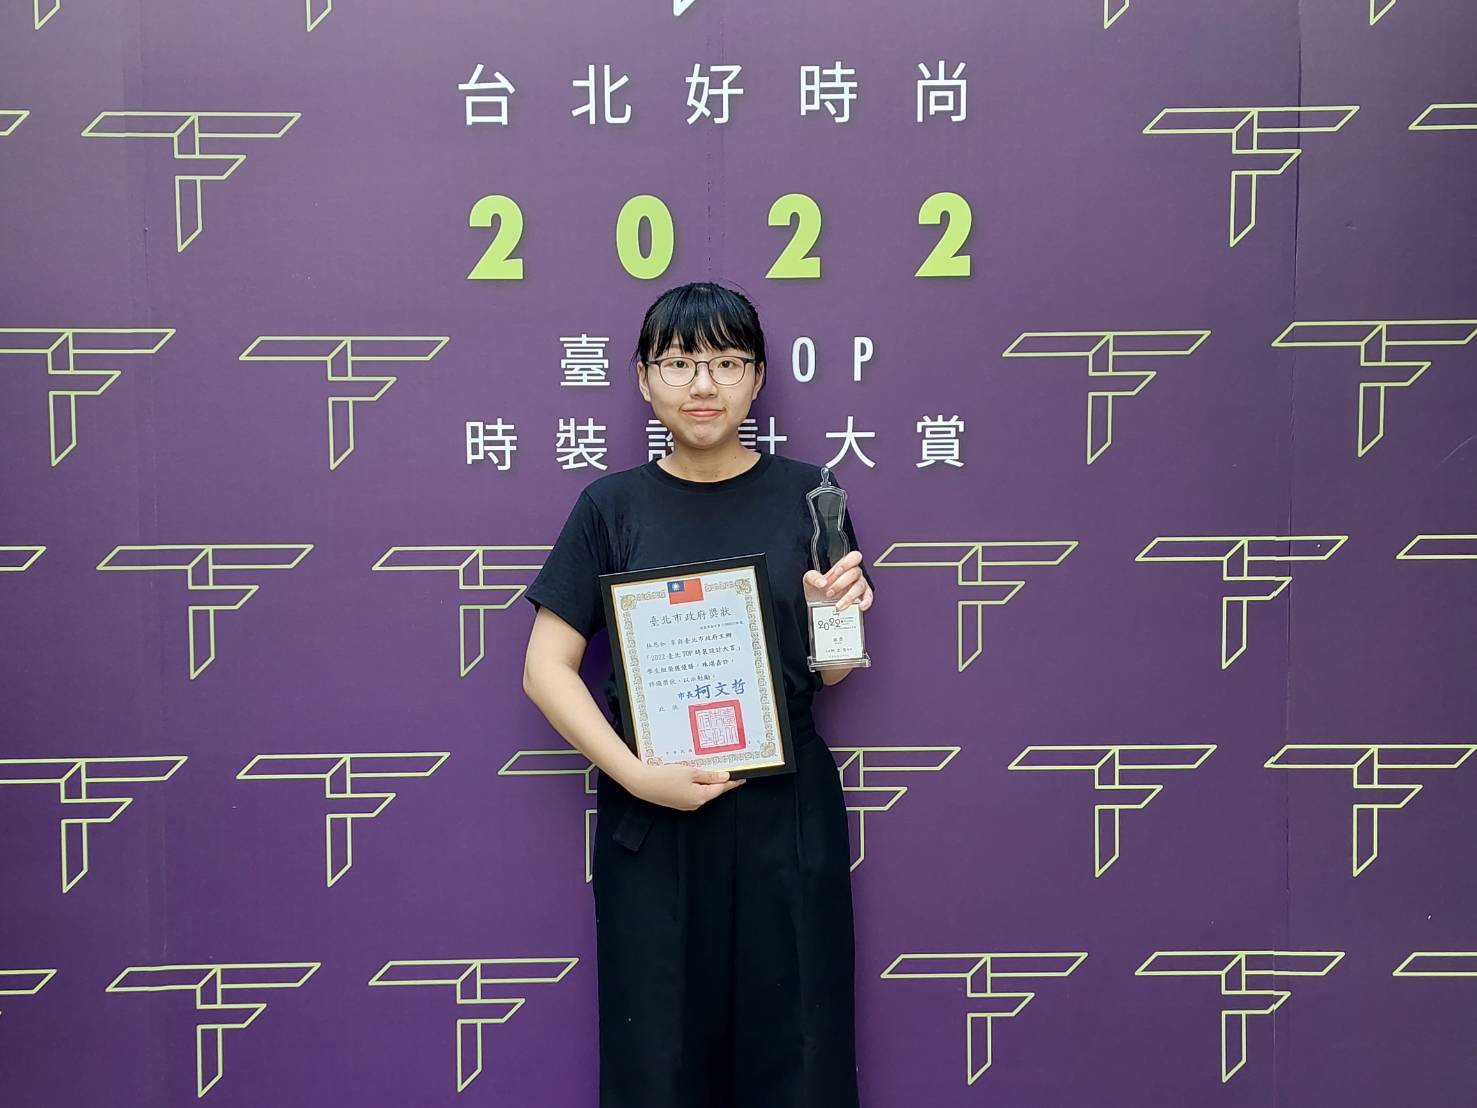 林恩如同學榮獲2022台北好時尚TOP時裝設計大賞學生組銀獎